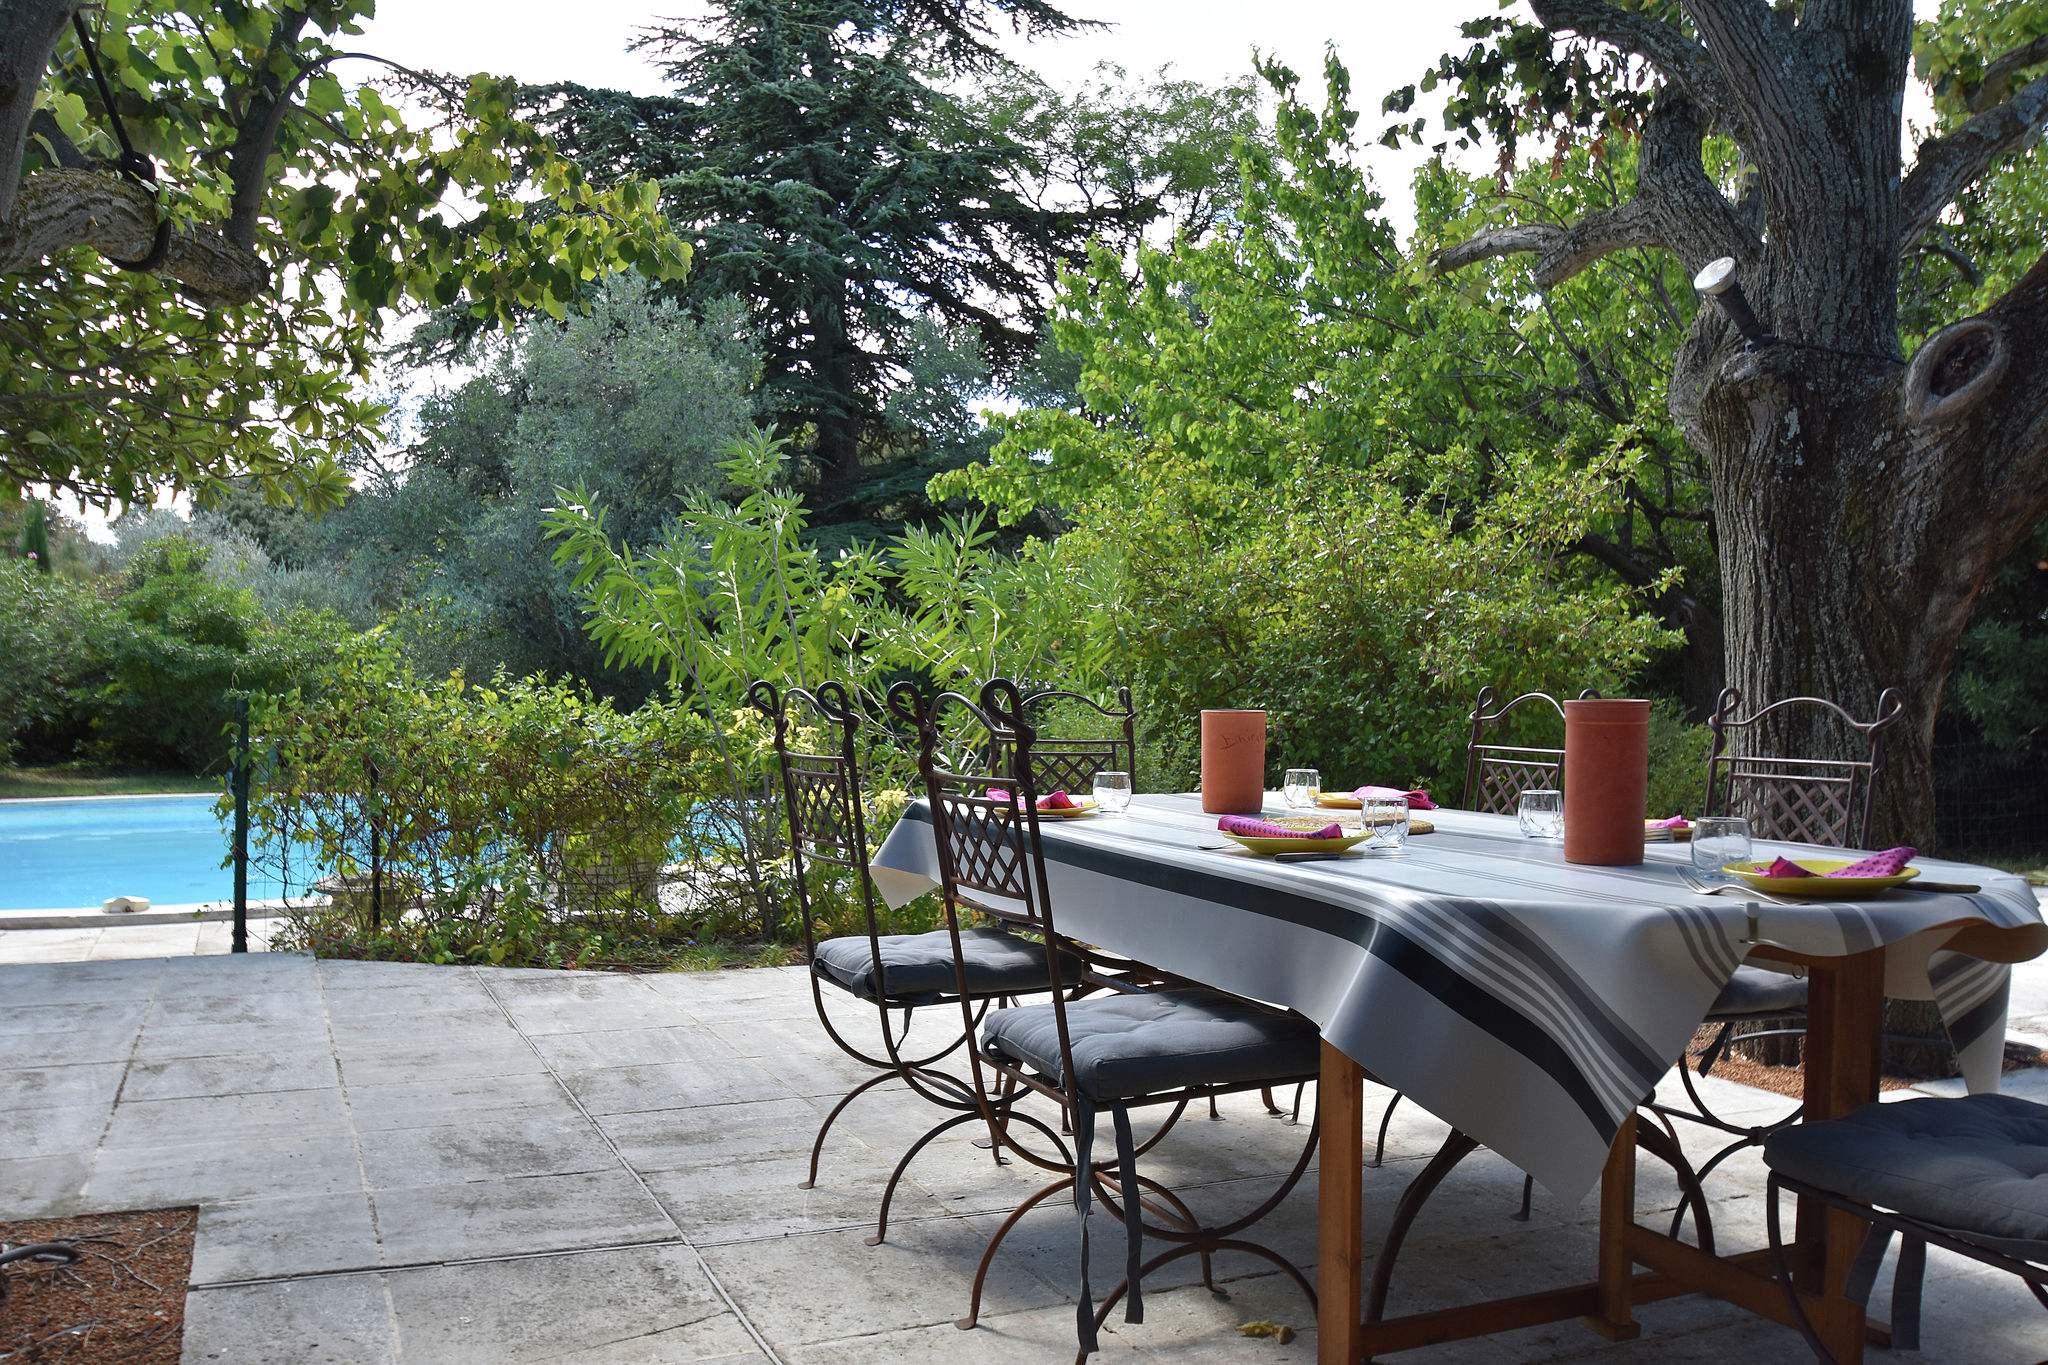 Ferienhaus mit Pool und Garten in der Nähe von Avignon